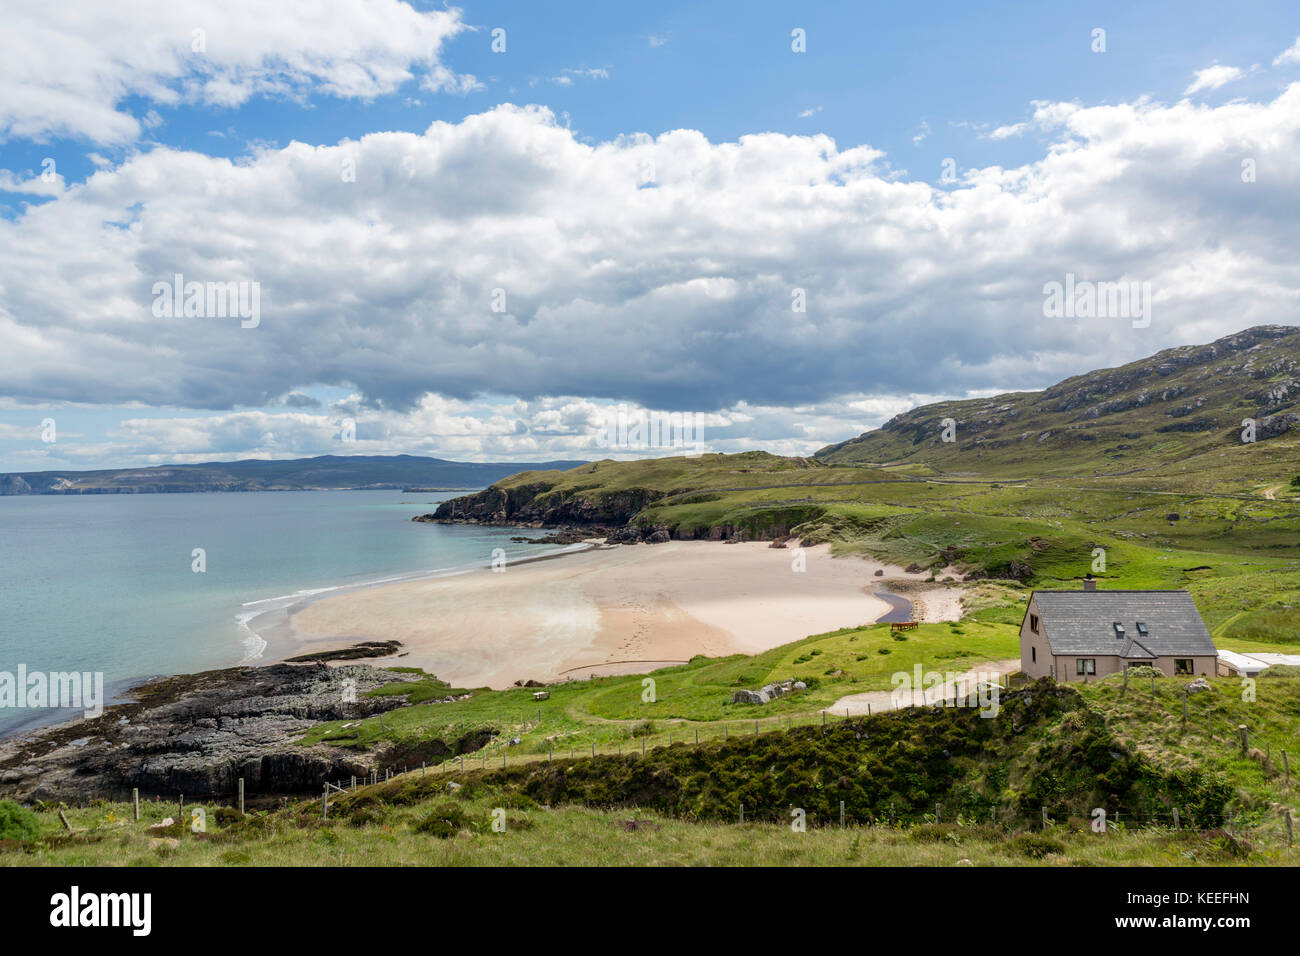 Casa sulla spiaggia a Sangobeg, vicino a Durness, Sutherland, Highlands scozzesi, Scotland, Regno Unito Foto Stock